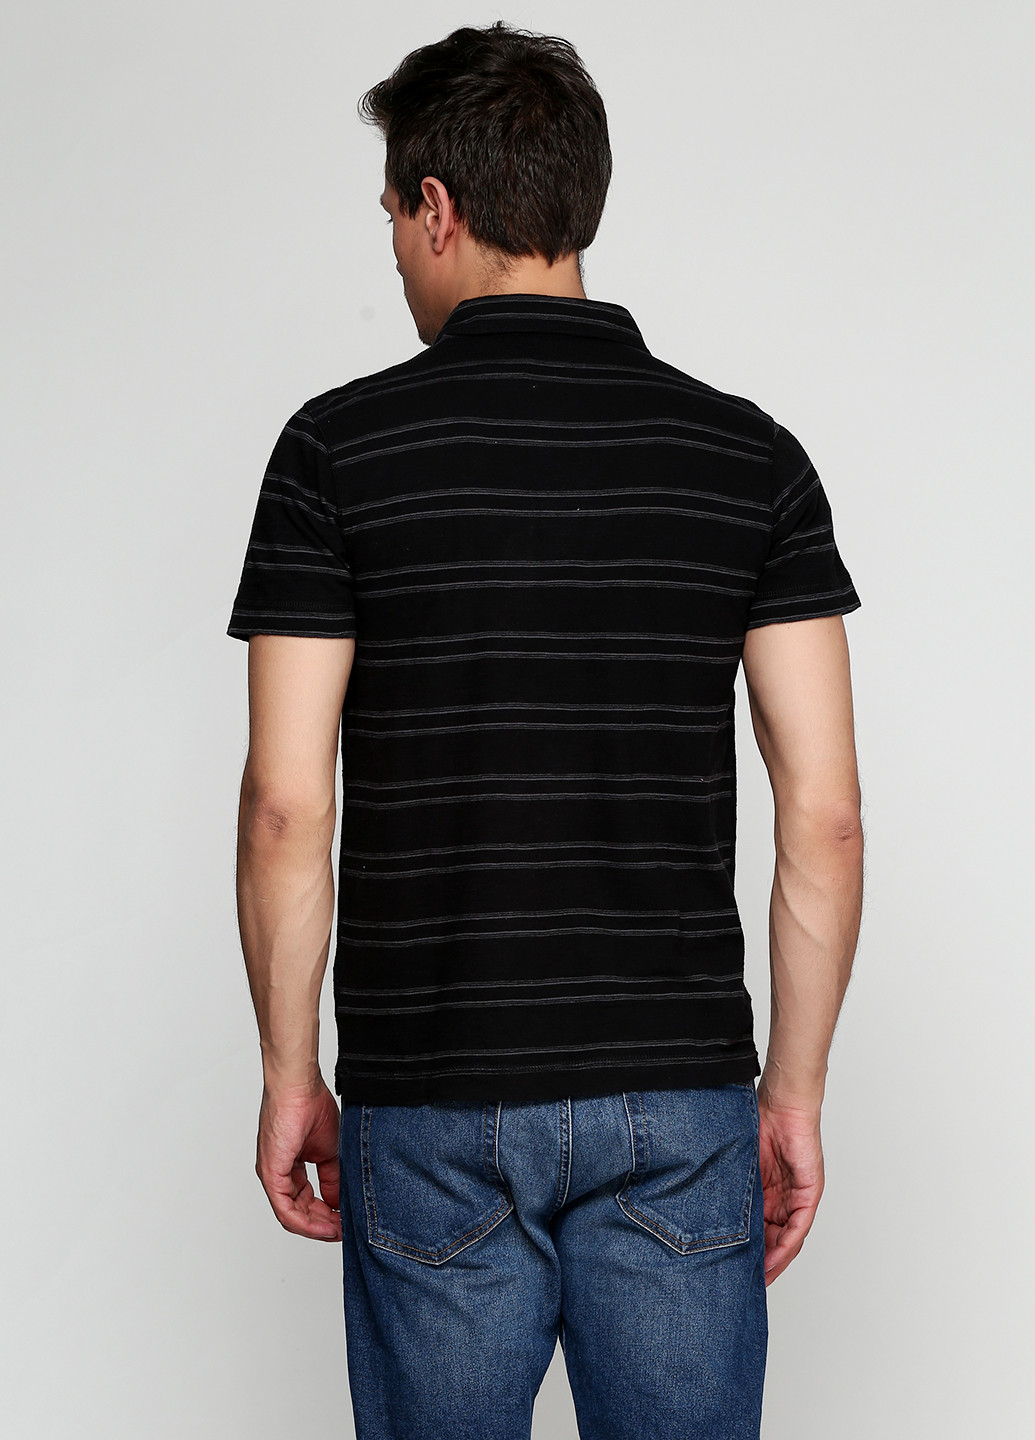 Черная футболка-поло для мужчин Calvin Klein в полоску